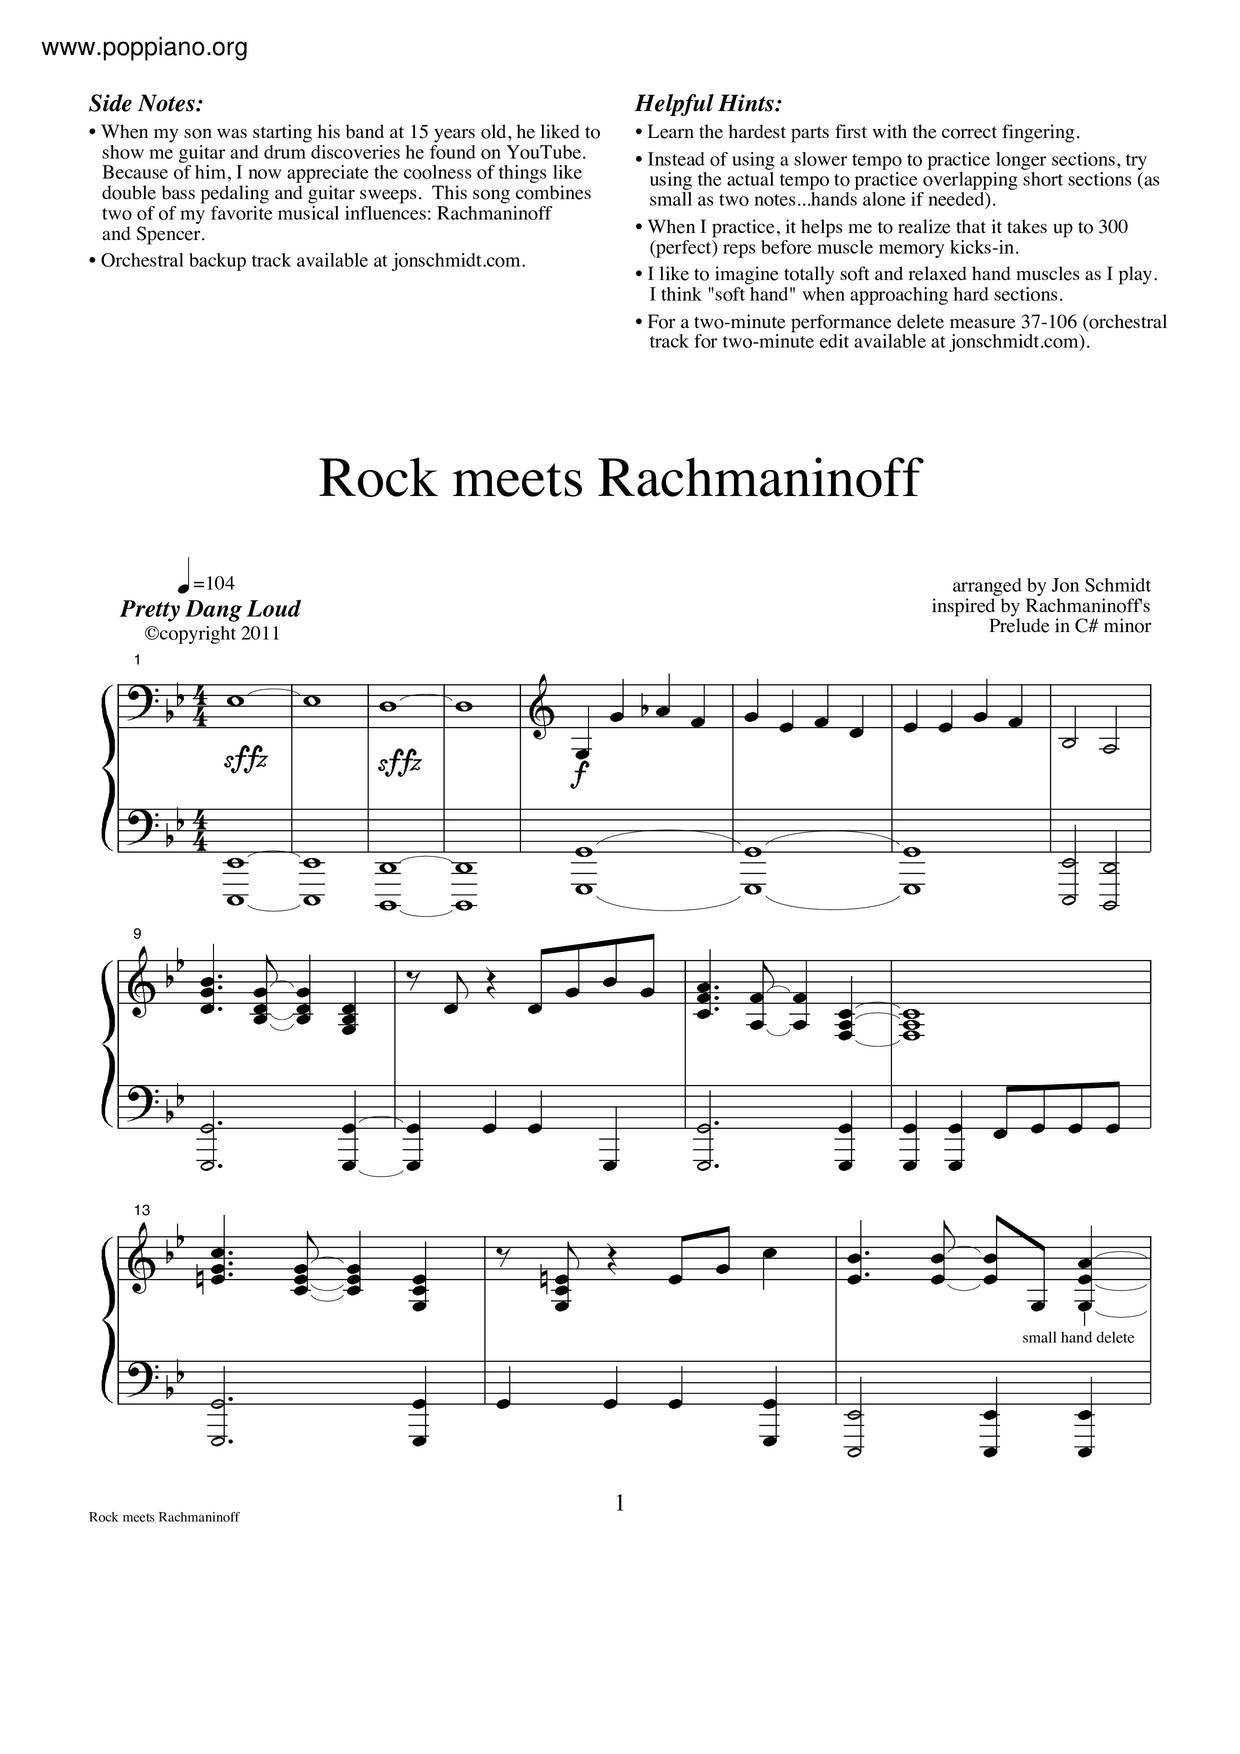 Rock Meets Rachmaninoff Score